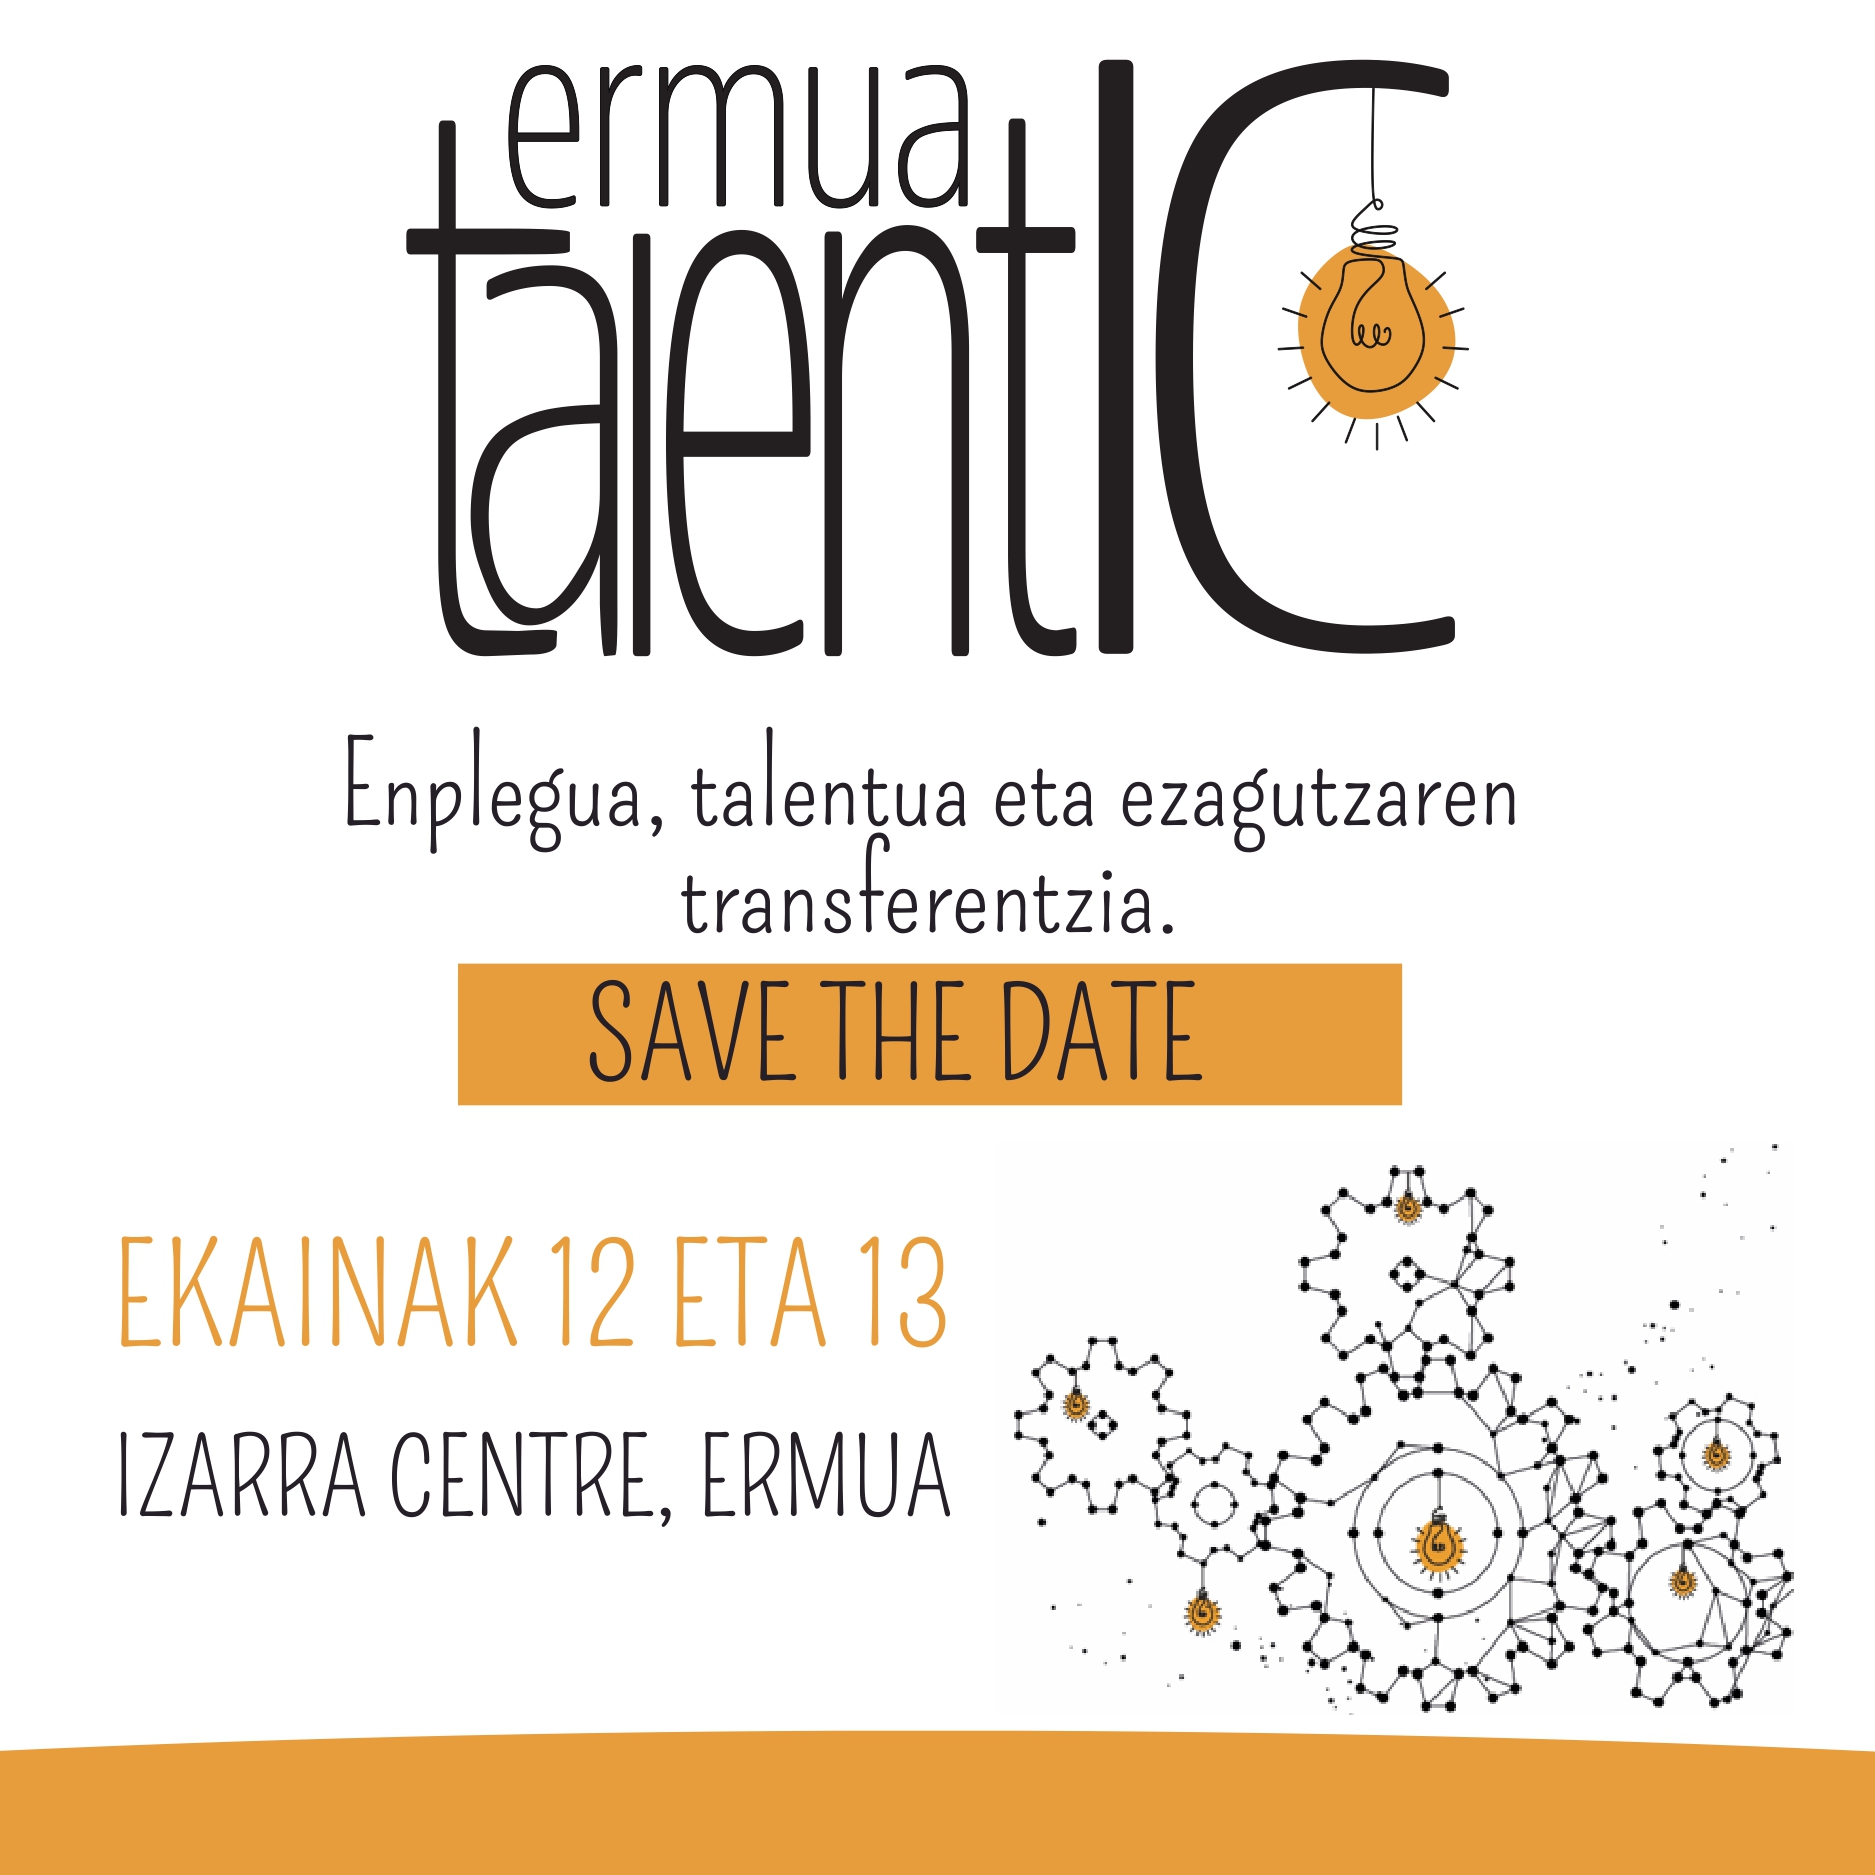 Ermua TalentIC - Enplegua talentua eta ezagutzaren transferentzia.

Save the date: ekainak 12 eta 13.

Izarra Centre Ermua.